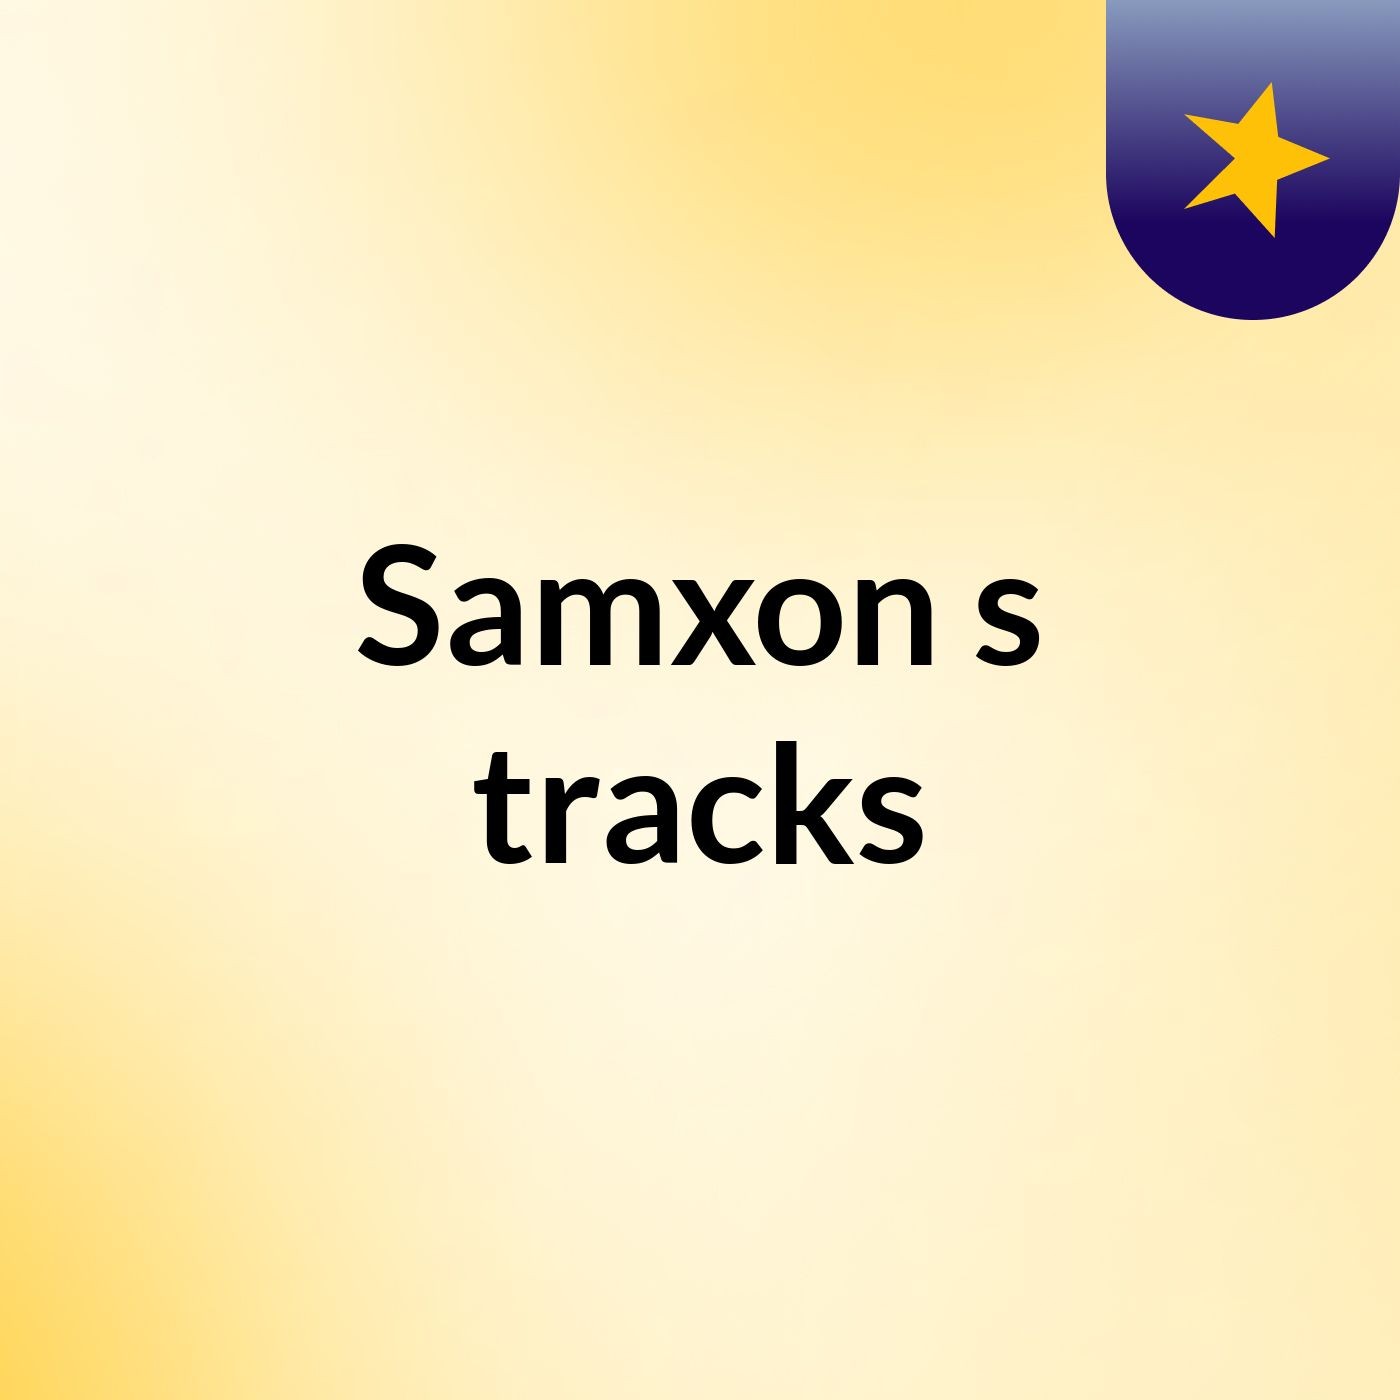 Samxon's tracks